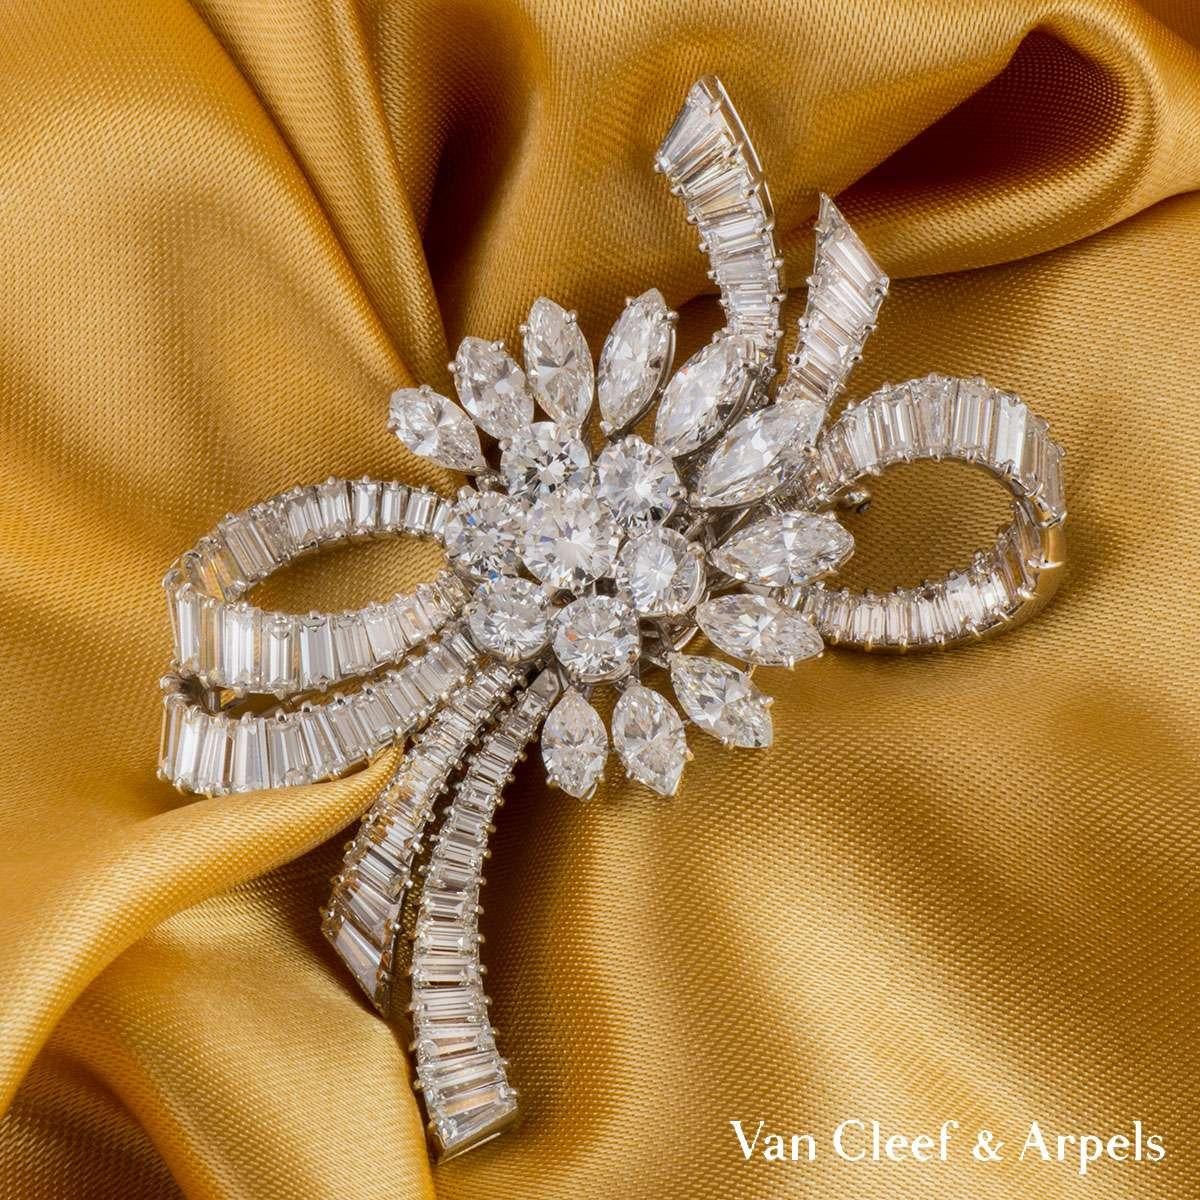 Exceptionnelle broche en diamants de Van Cleef & Arpels, c.C.1950. La grappe centrale de sept diamants ronds de taille brillant est entourée d'une demi-courbe extérieure de diamants marquise. Le diamant rond central de taille brillant pèse 0,65ct